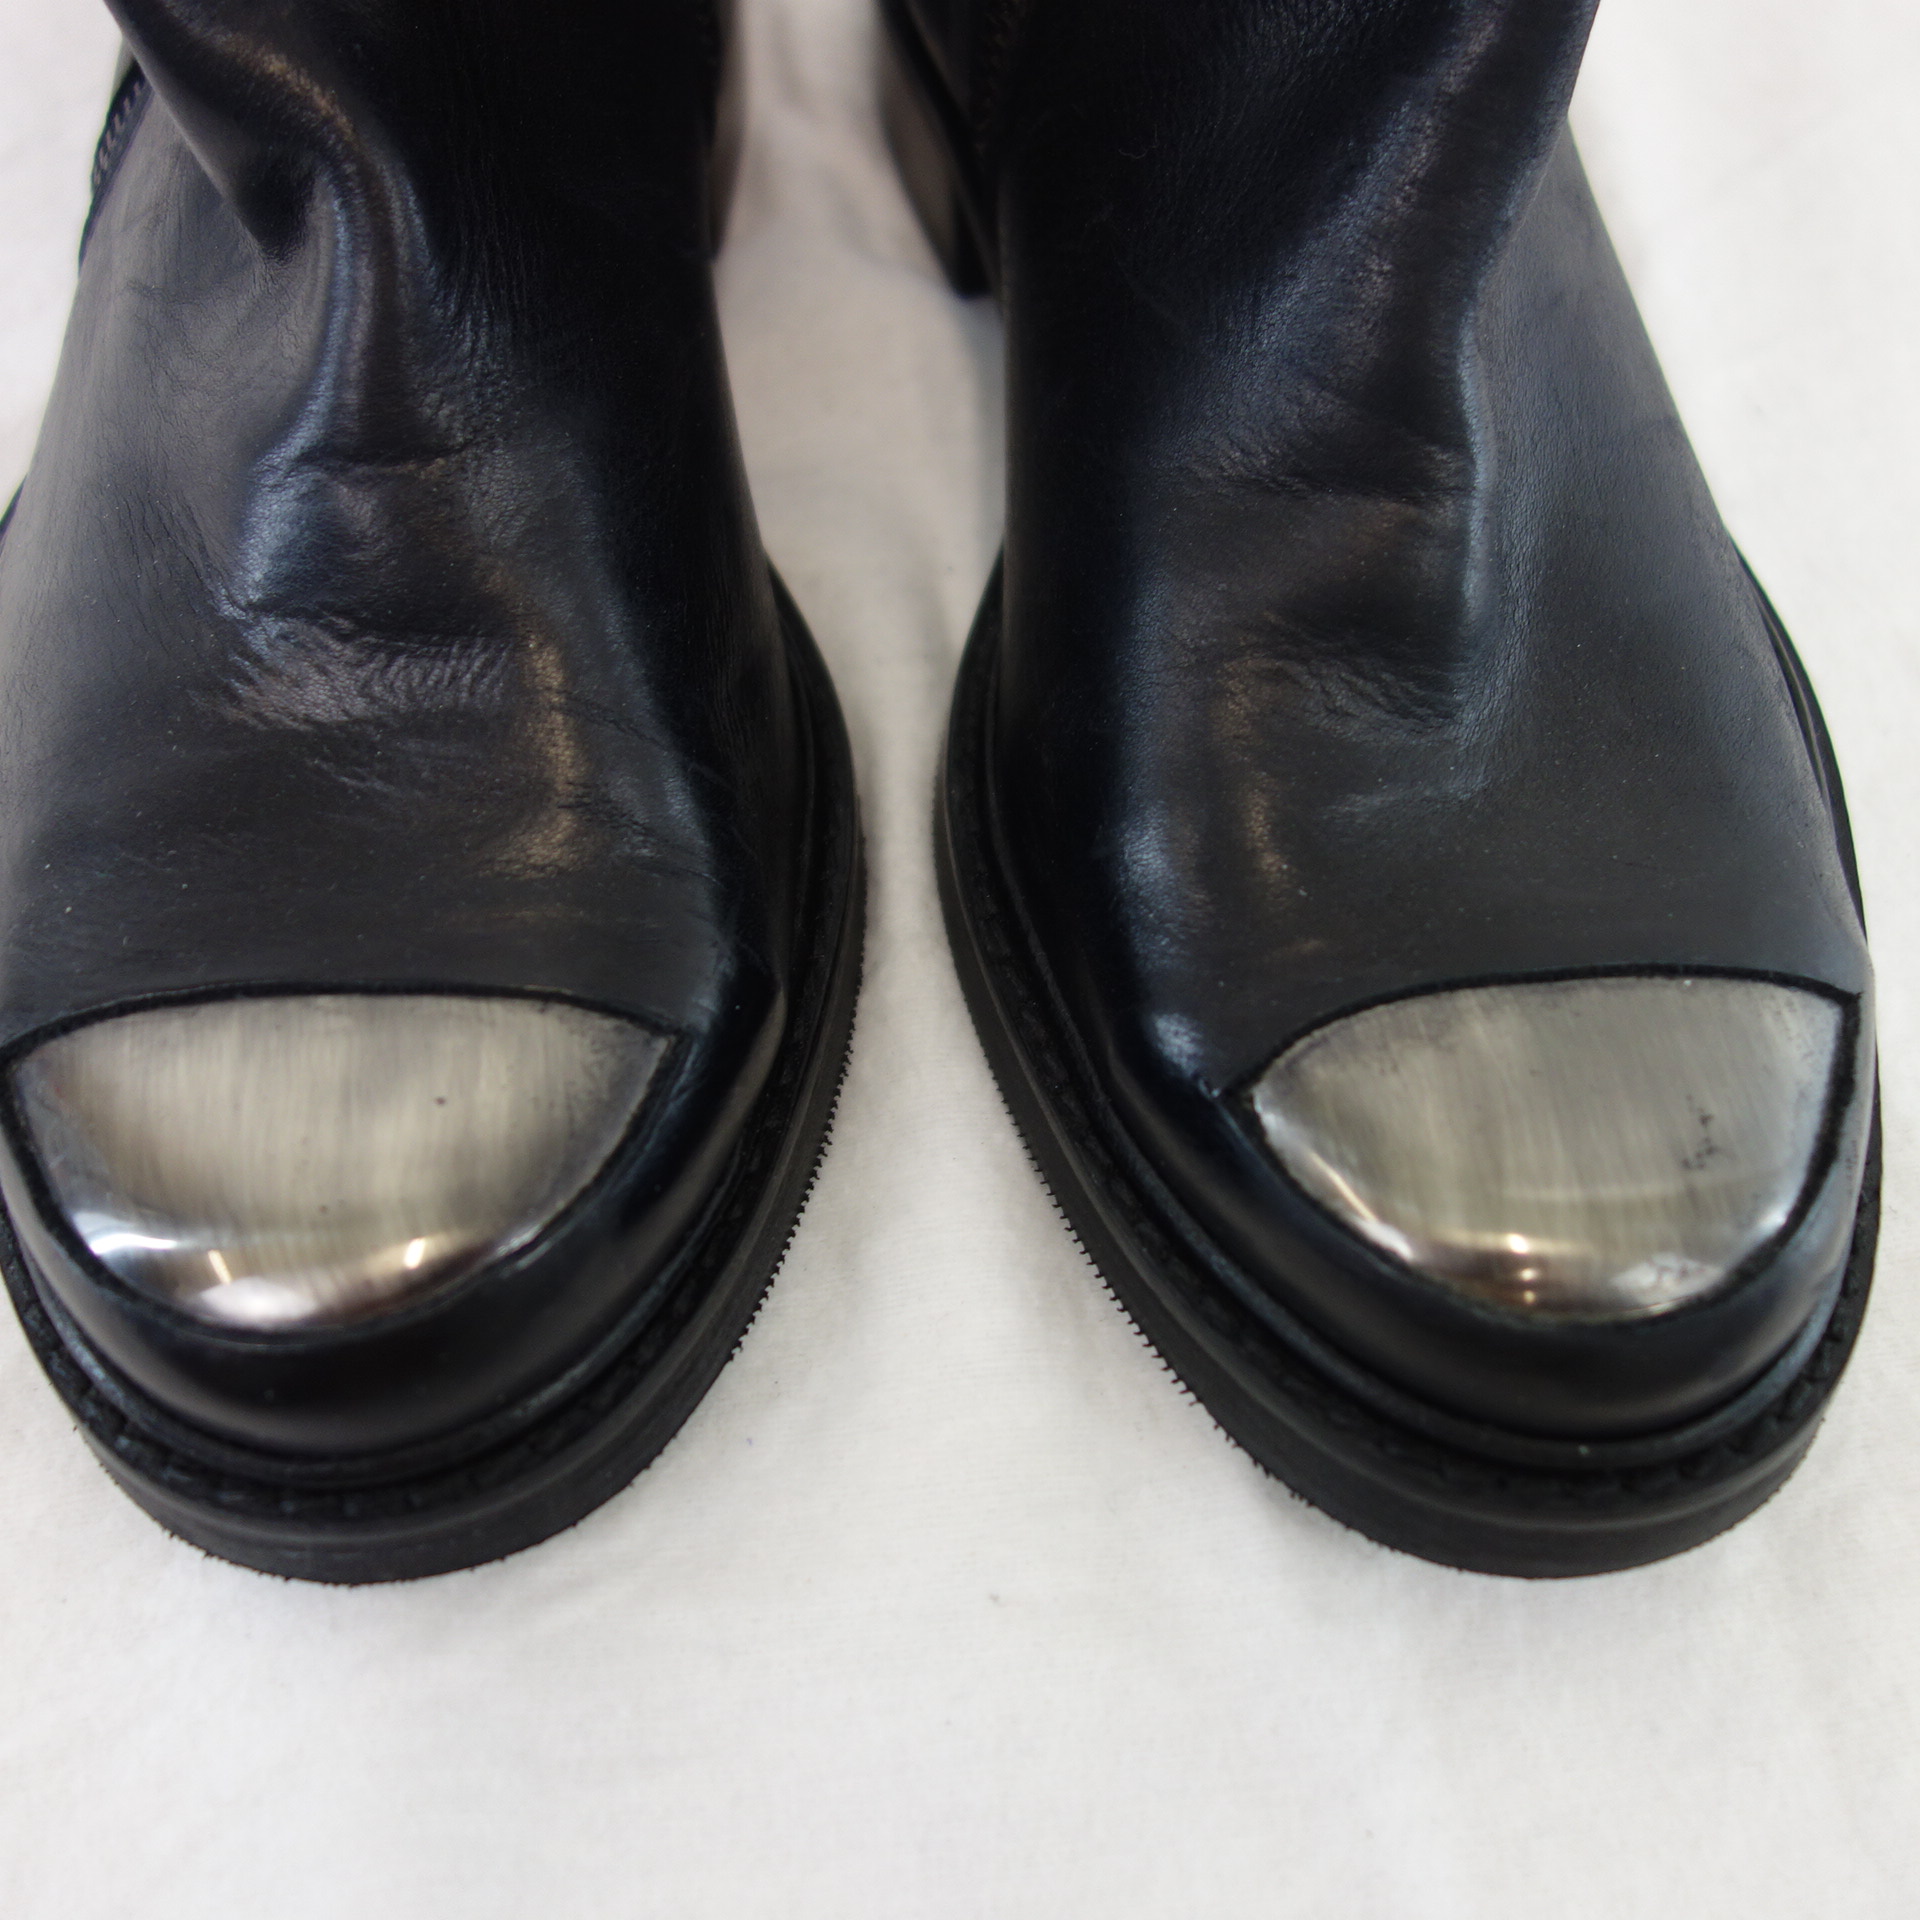 BUKELA Damen Schuhe Stiefel Stiefeletten Boots Leder Schwarz Größe 37